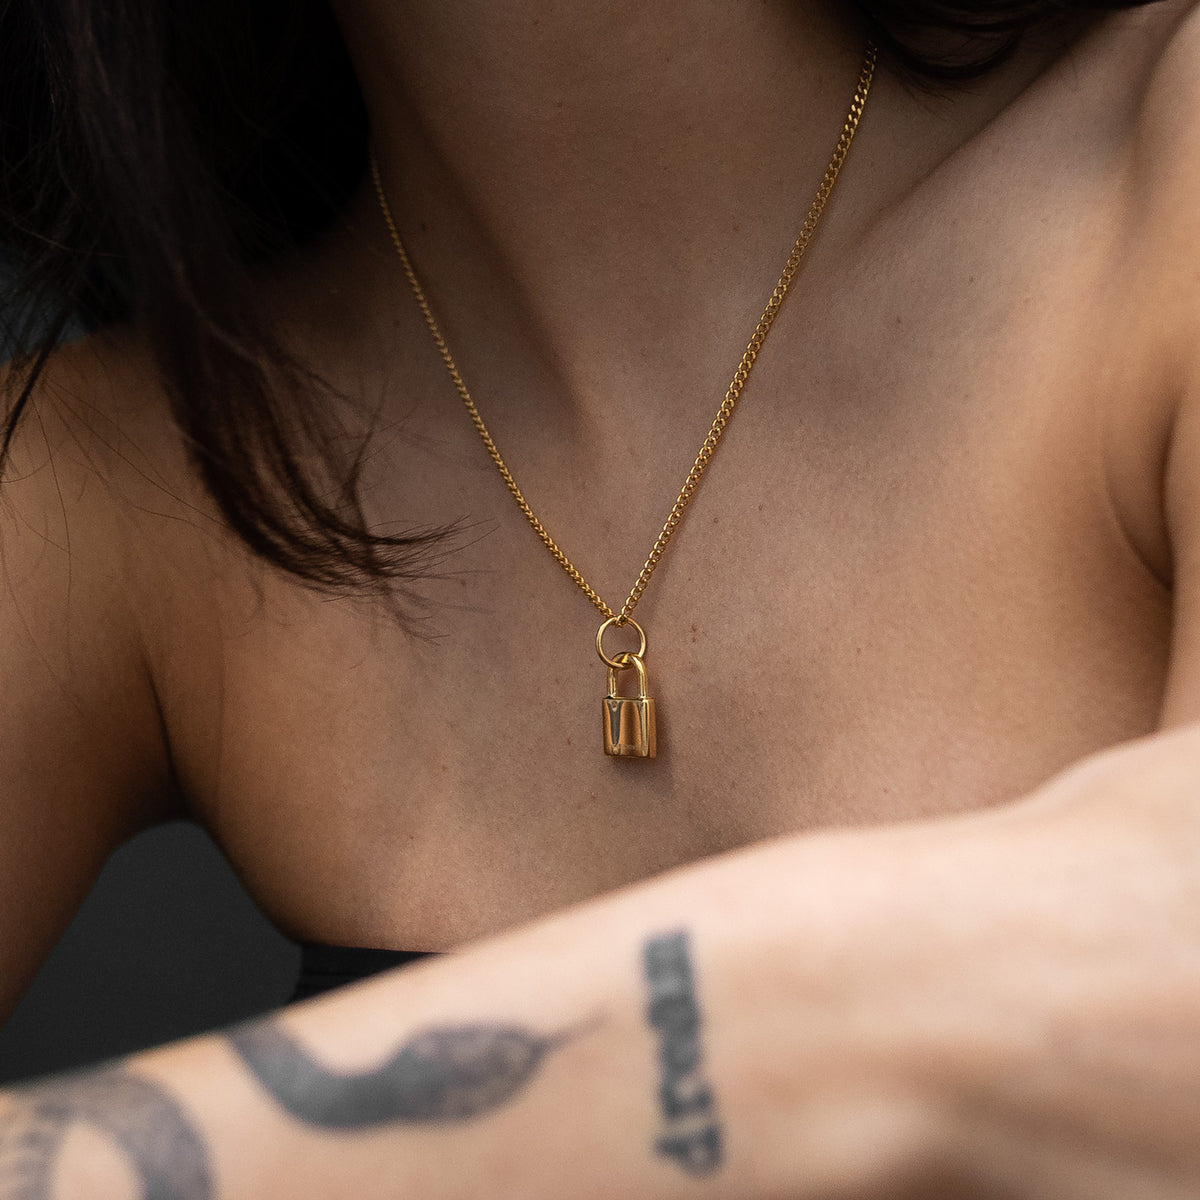 Gold Padlock Pendant Chain for women on model